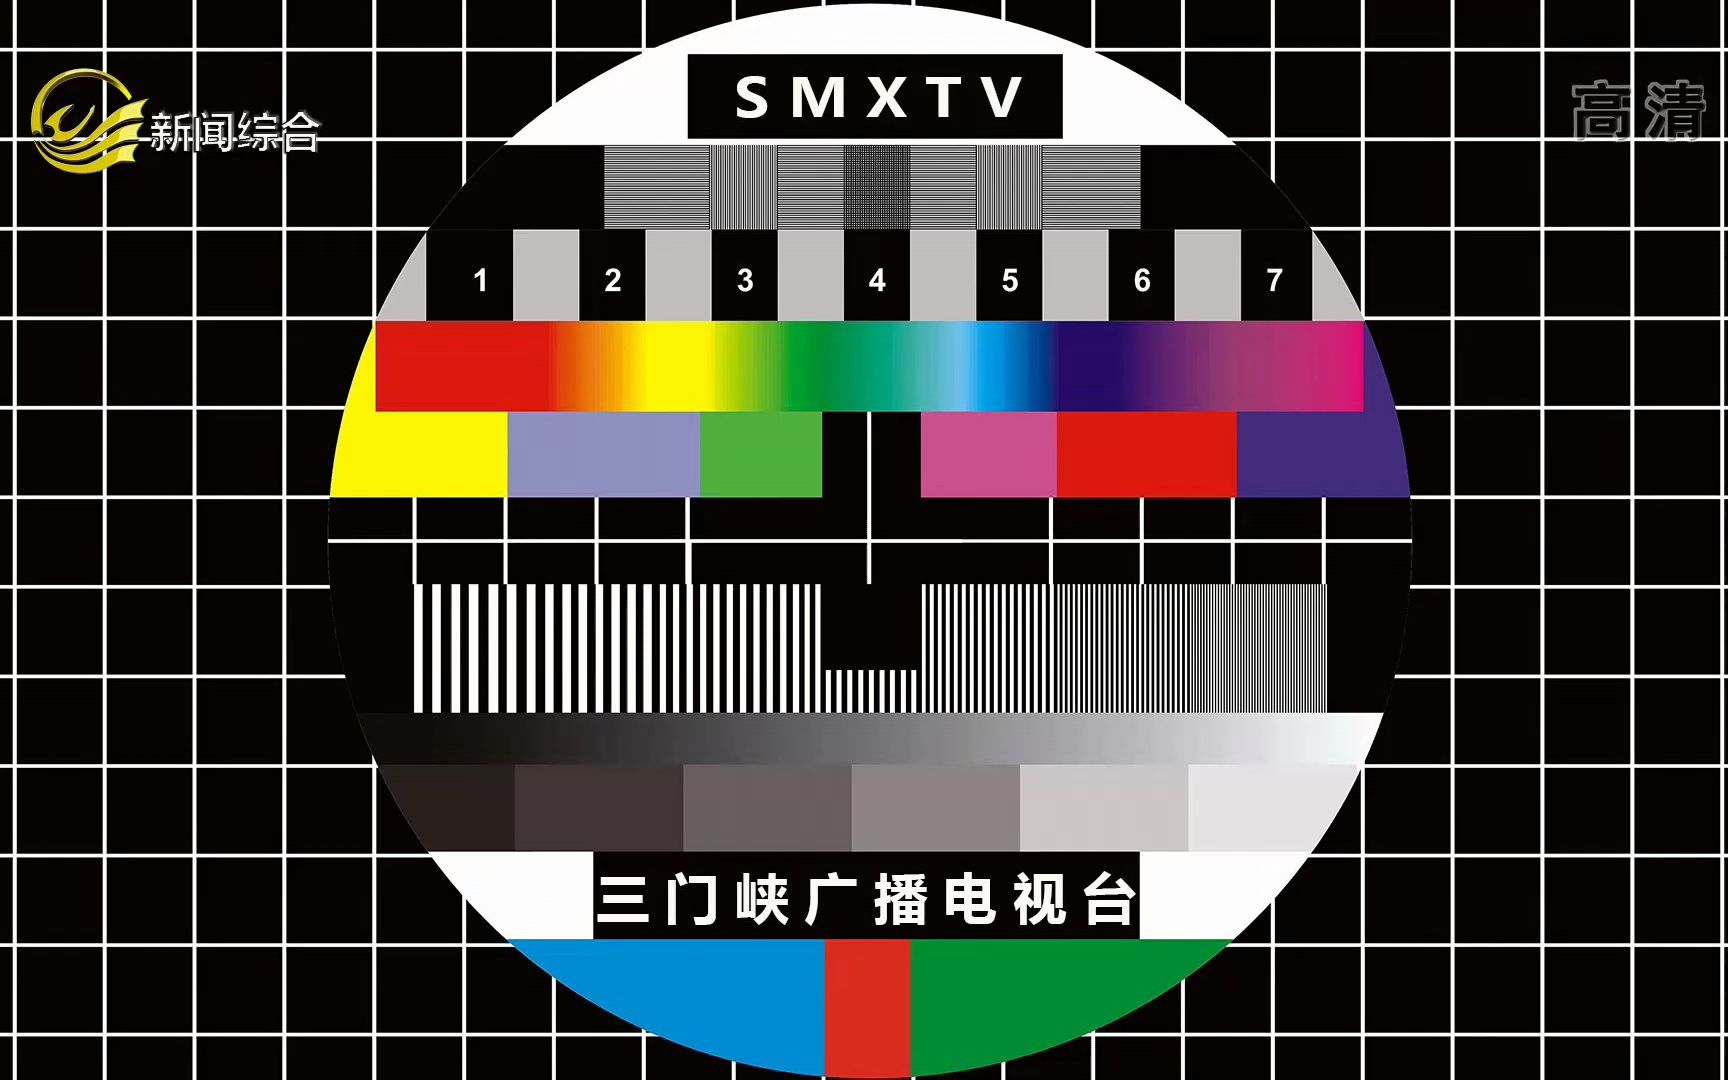 上海新闻频道手机台节目表上海电视台新闻综合频道节目预告